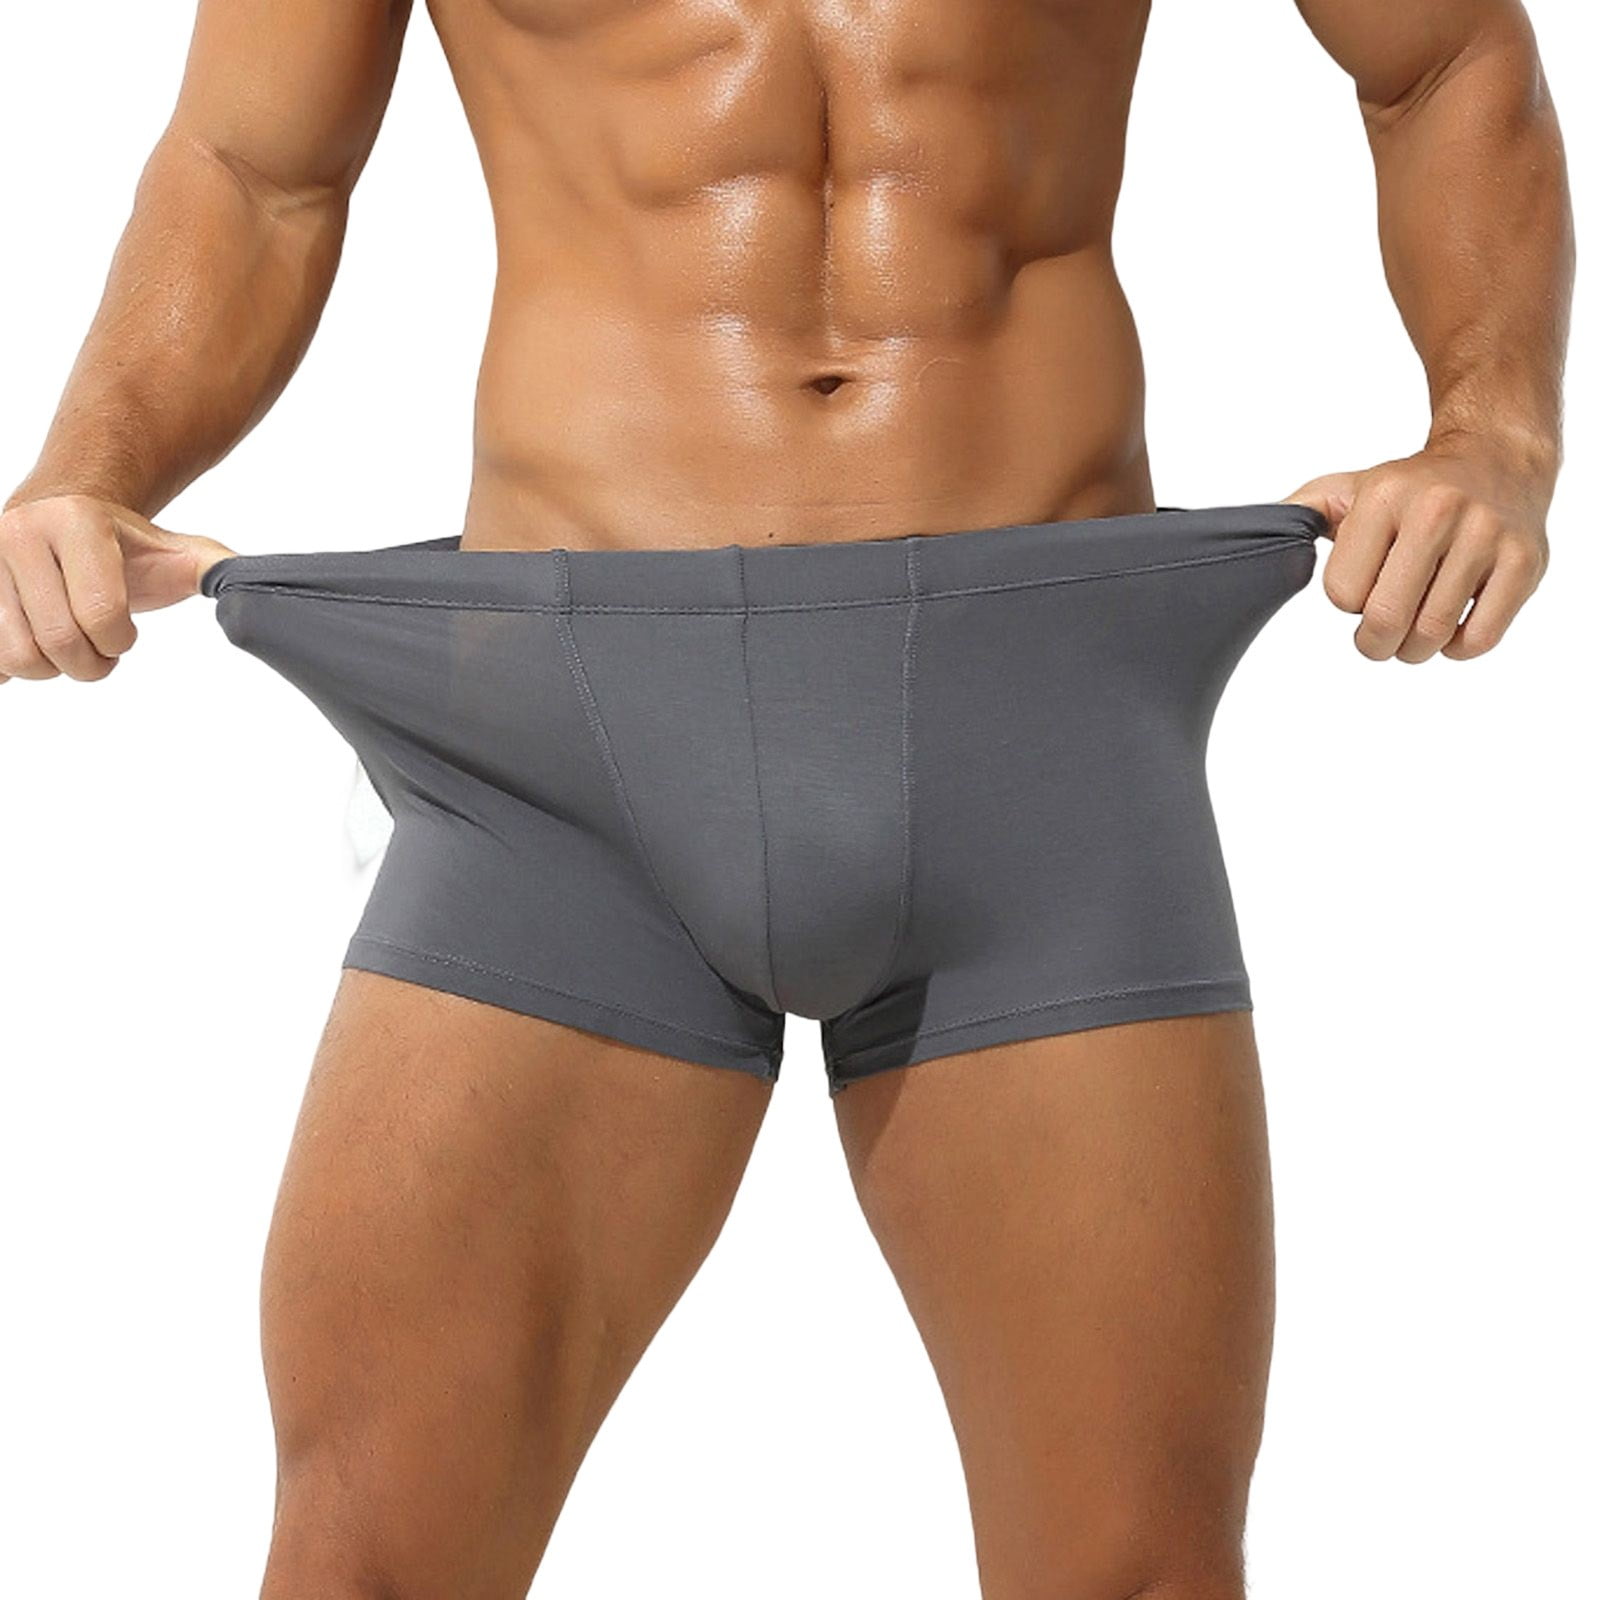 zuwimk Mens Underwear,Men's Cotton Stretch Underwear Support Briefs Wide  Waistband Z-Gray,M 